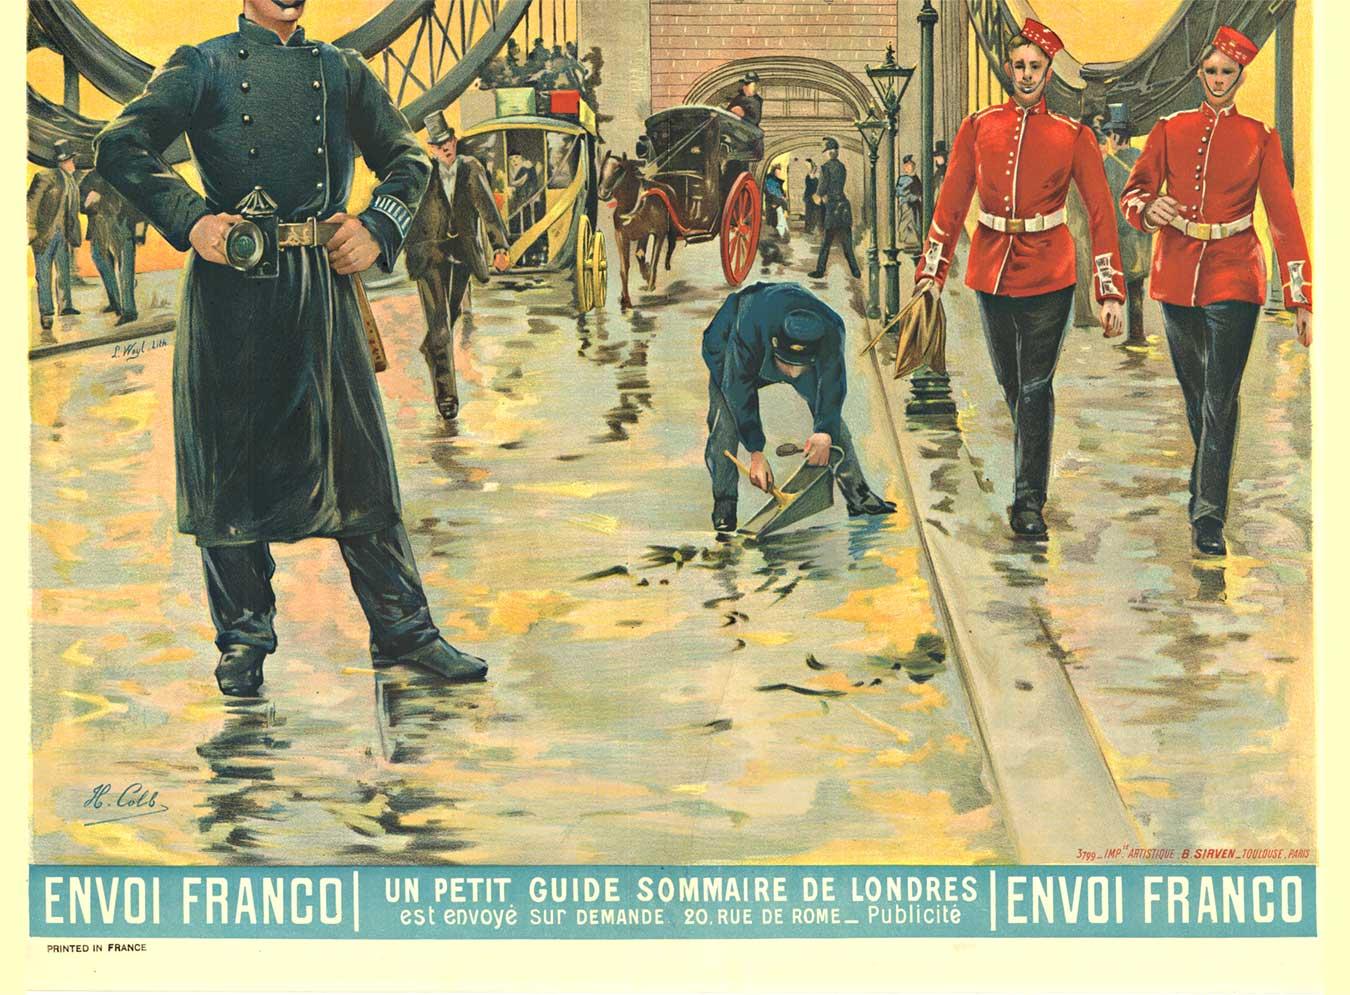 Original Paris to London by train vintage poster  Paris - Loundres - Art Nouveau Print by H. Colb